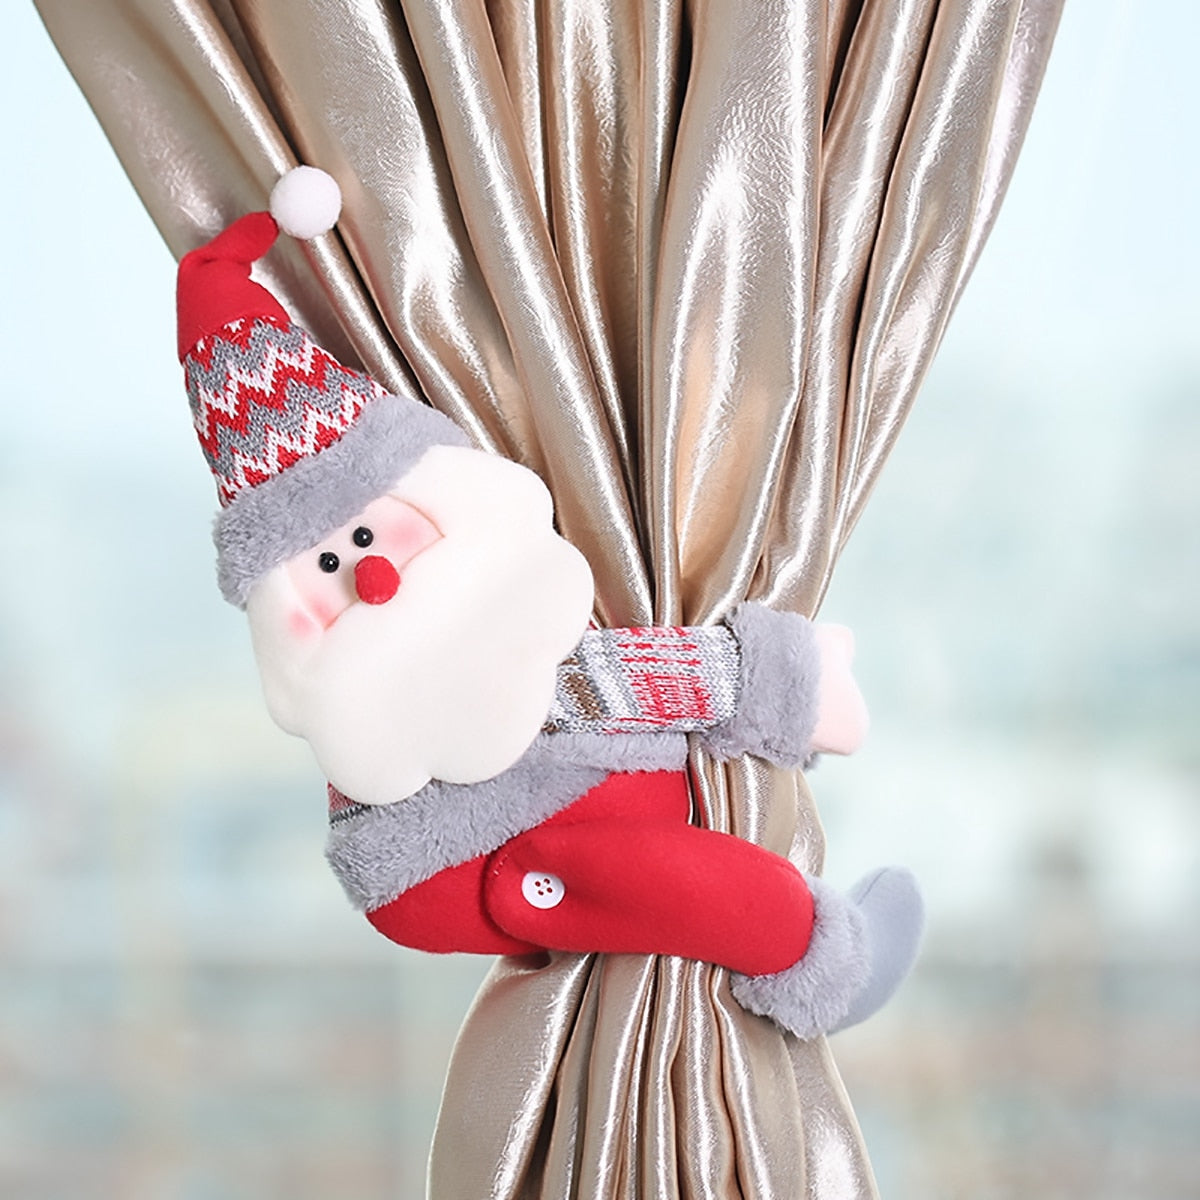 Santa's Sleigh Ride Curtain Hook